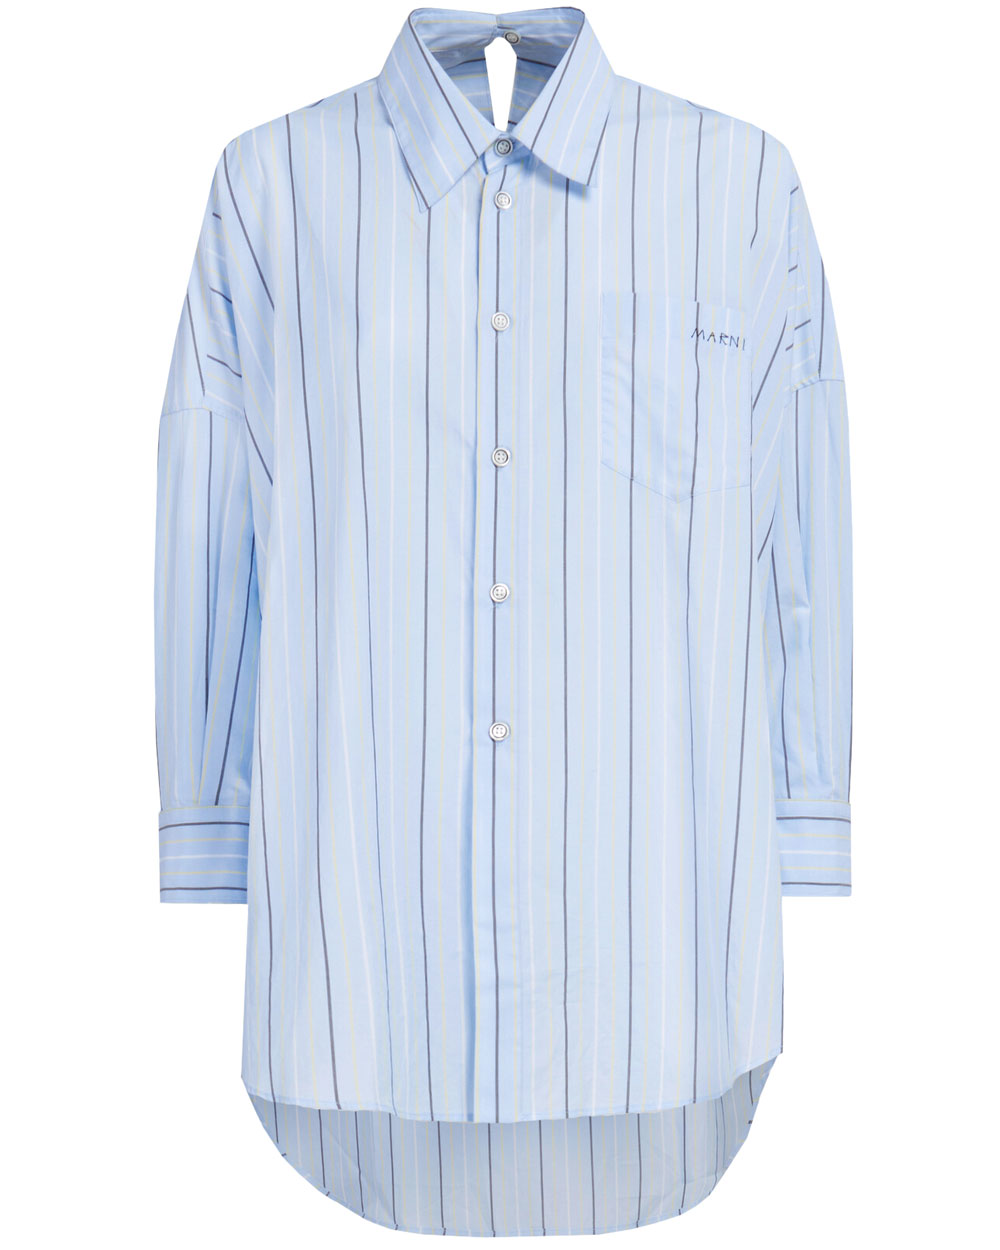 Aqua Marine Stripe Oversized Long Sleeve Shirt